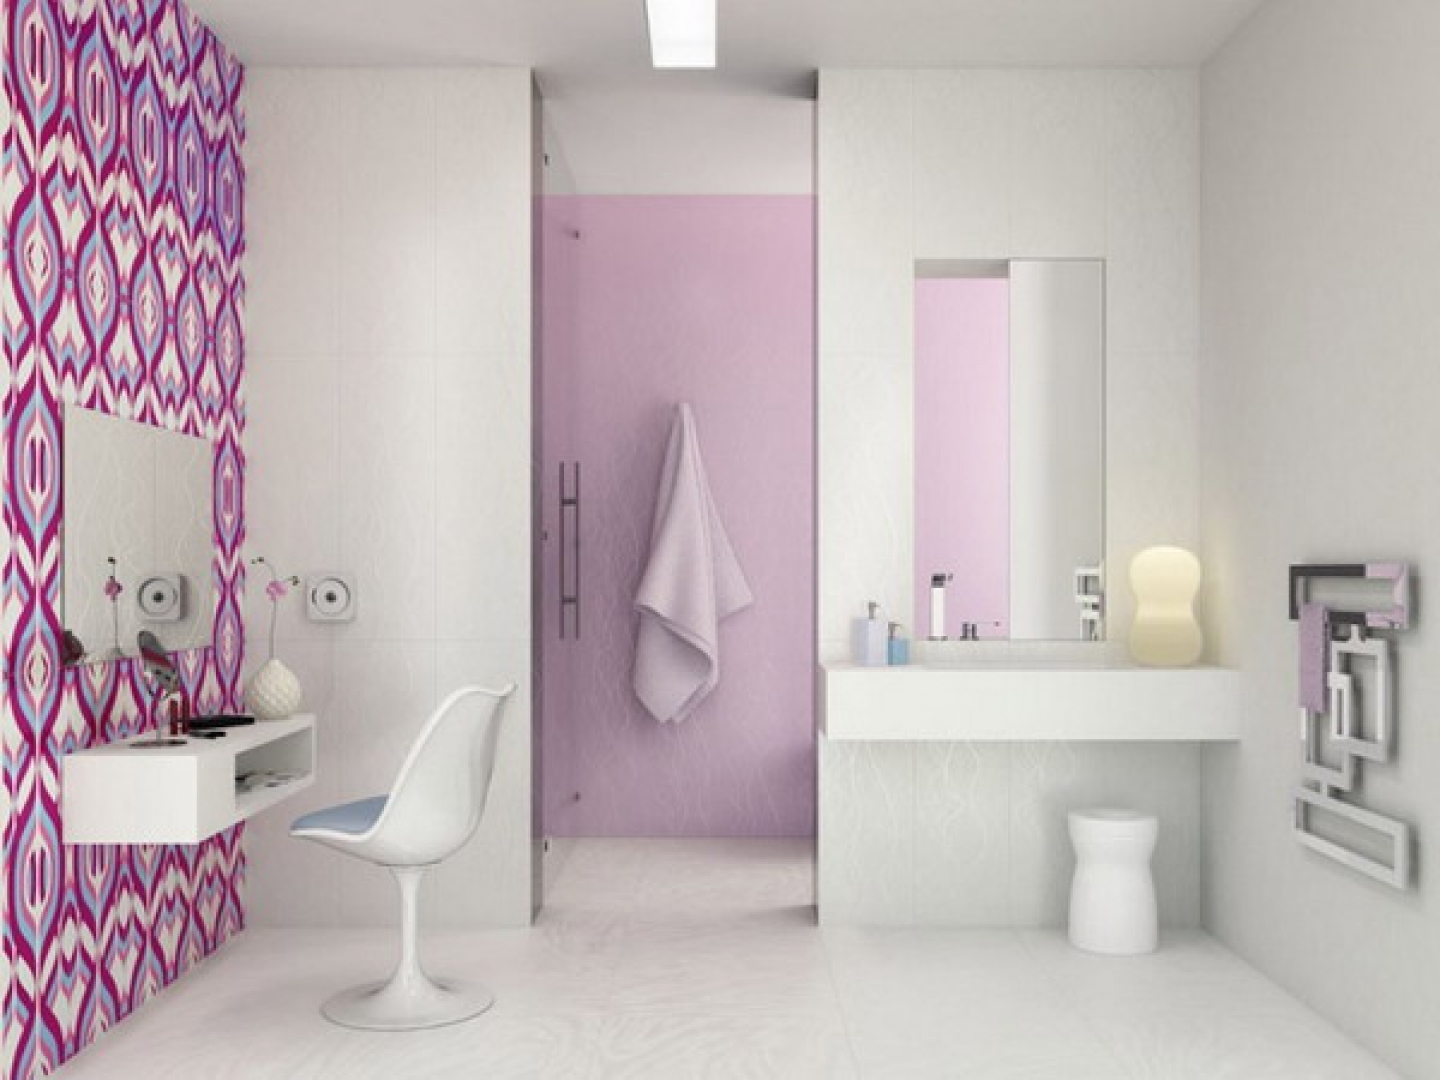 wallpaper bathroom wallpaper decorating ideas bathroom wallpaper ideas